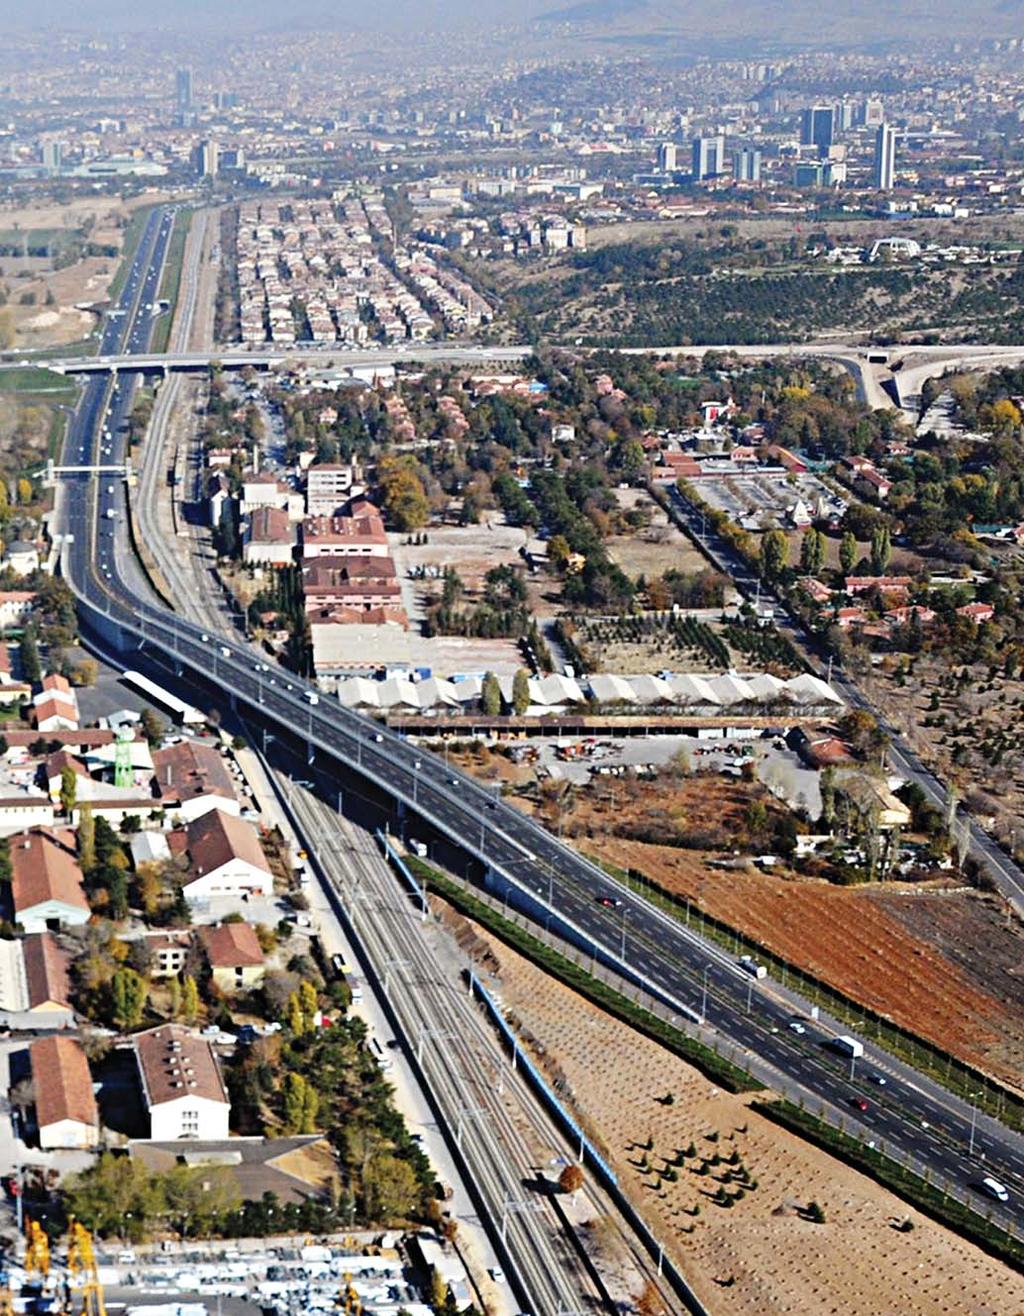 Haber 3 Başkan Gökçek: 2 yılda Başkent trafiğine nefes aldıran 69 alt üst geçit yaptık A nkara Büyükşehir Belediye Başkanı Melih Gökçek, 5 yıl önce Ankara ya trafiği rahatlatmak amacıyla 30 adet alt